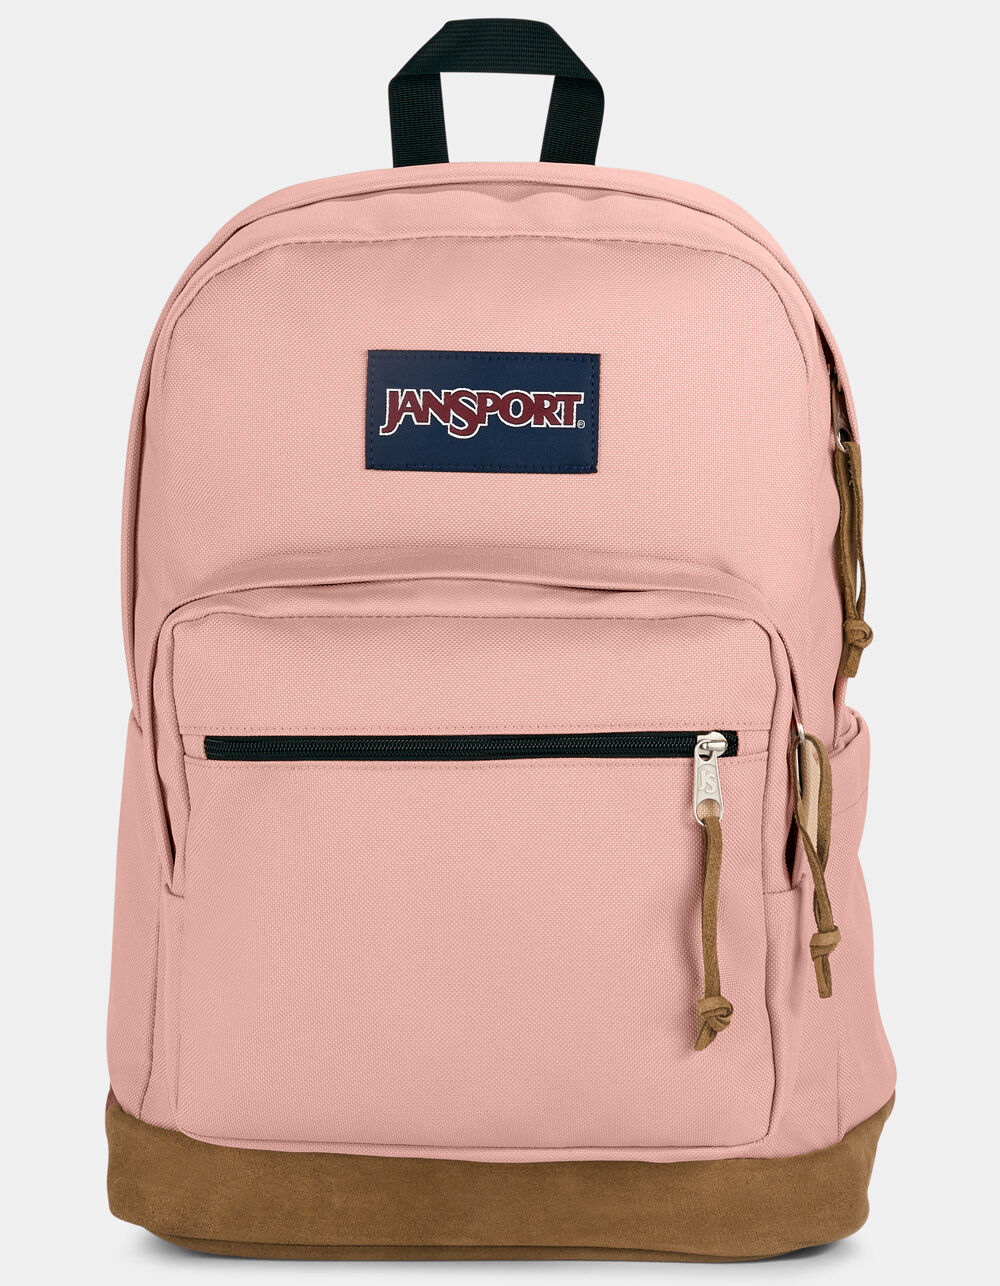 JANSPORT Right Pack Backpack - MISTY ROSE | Tillys